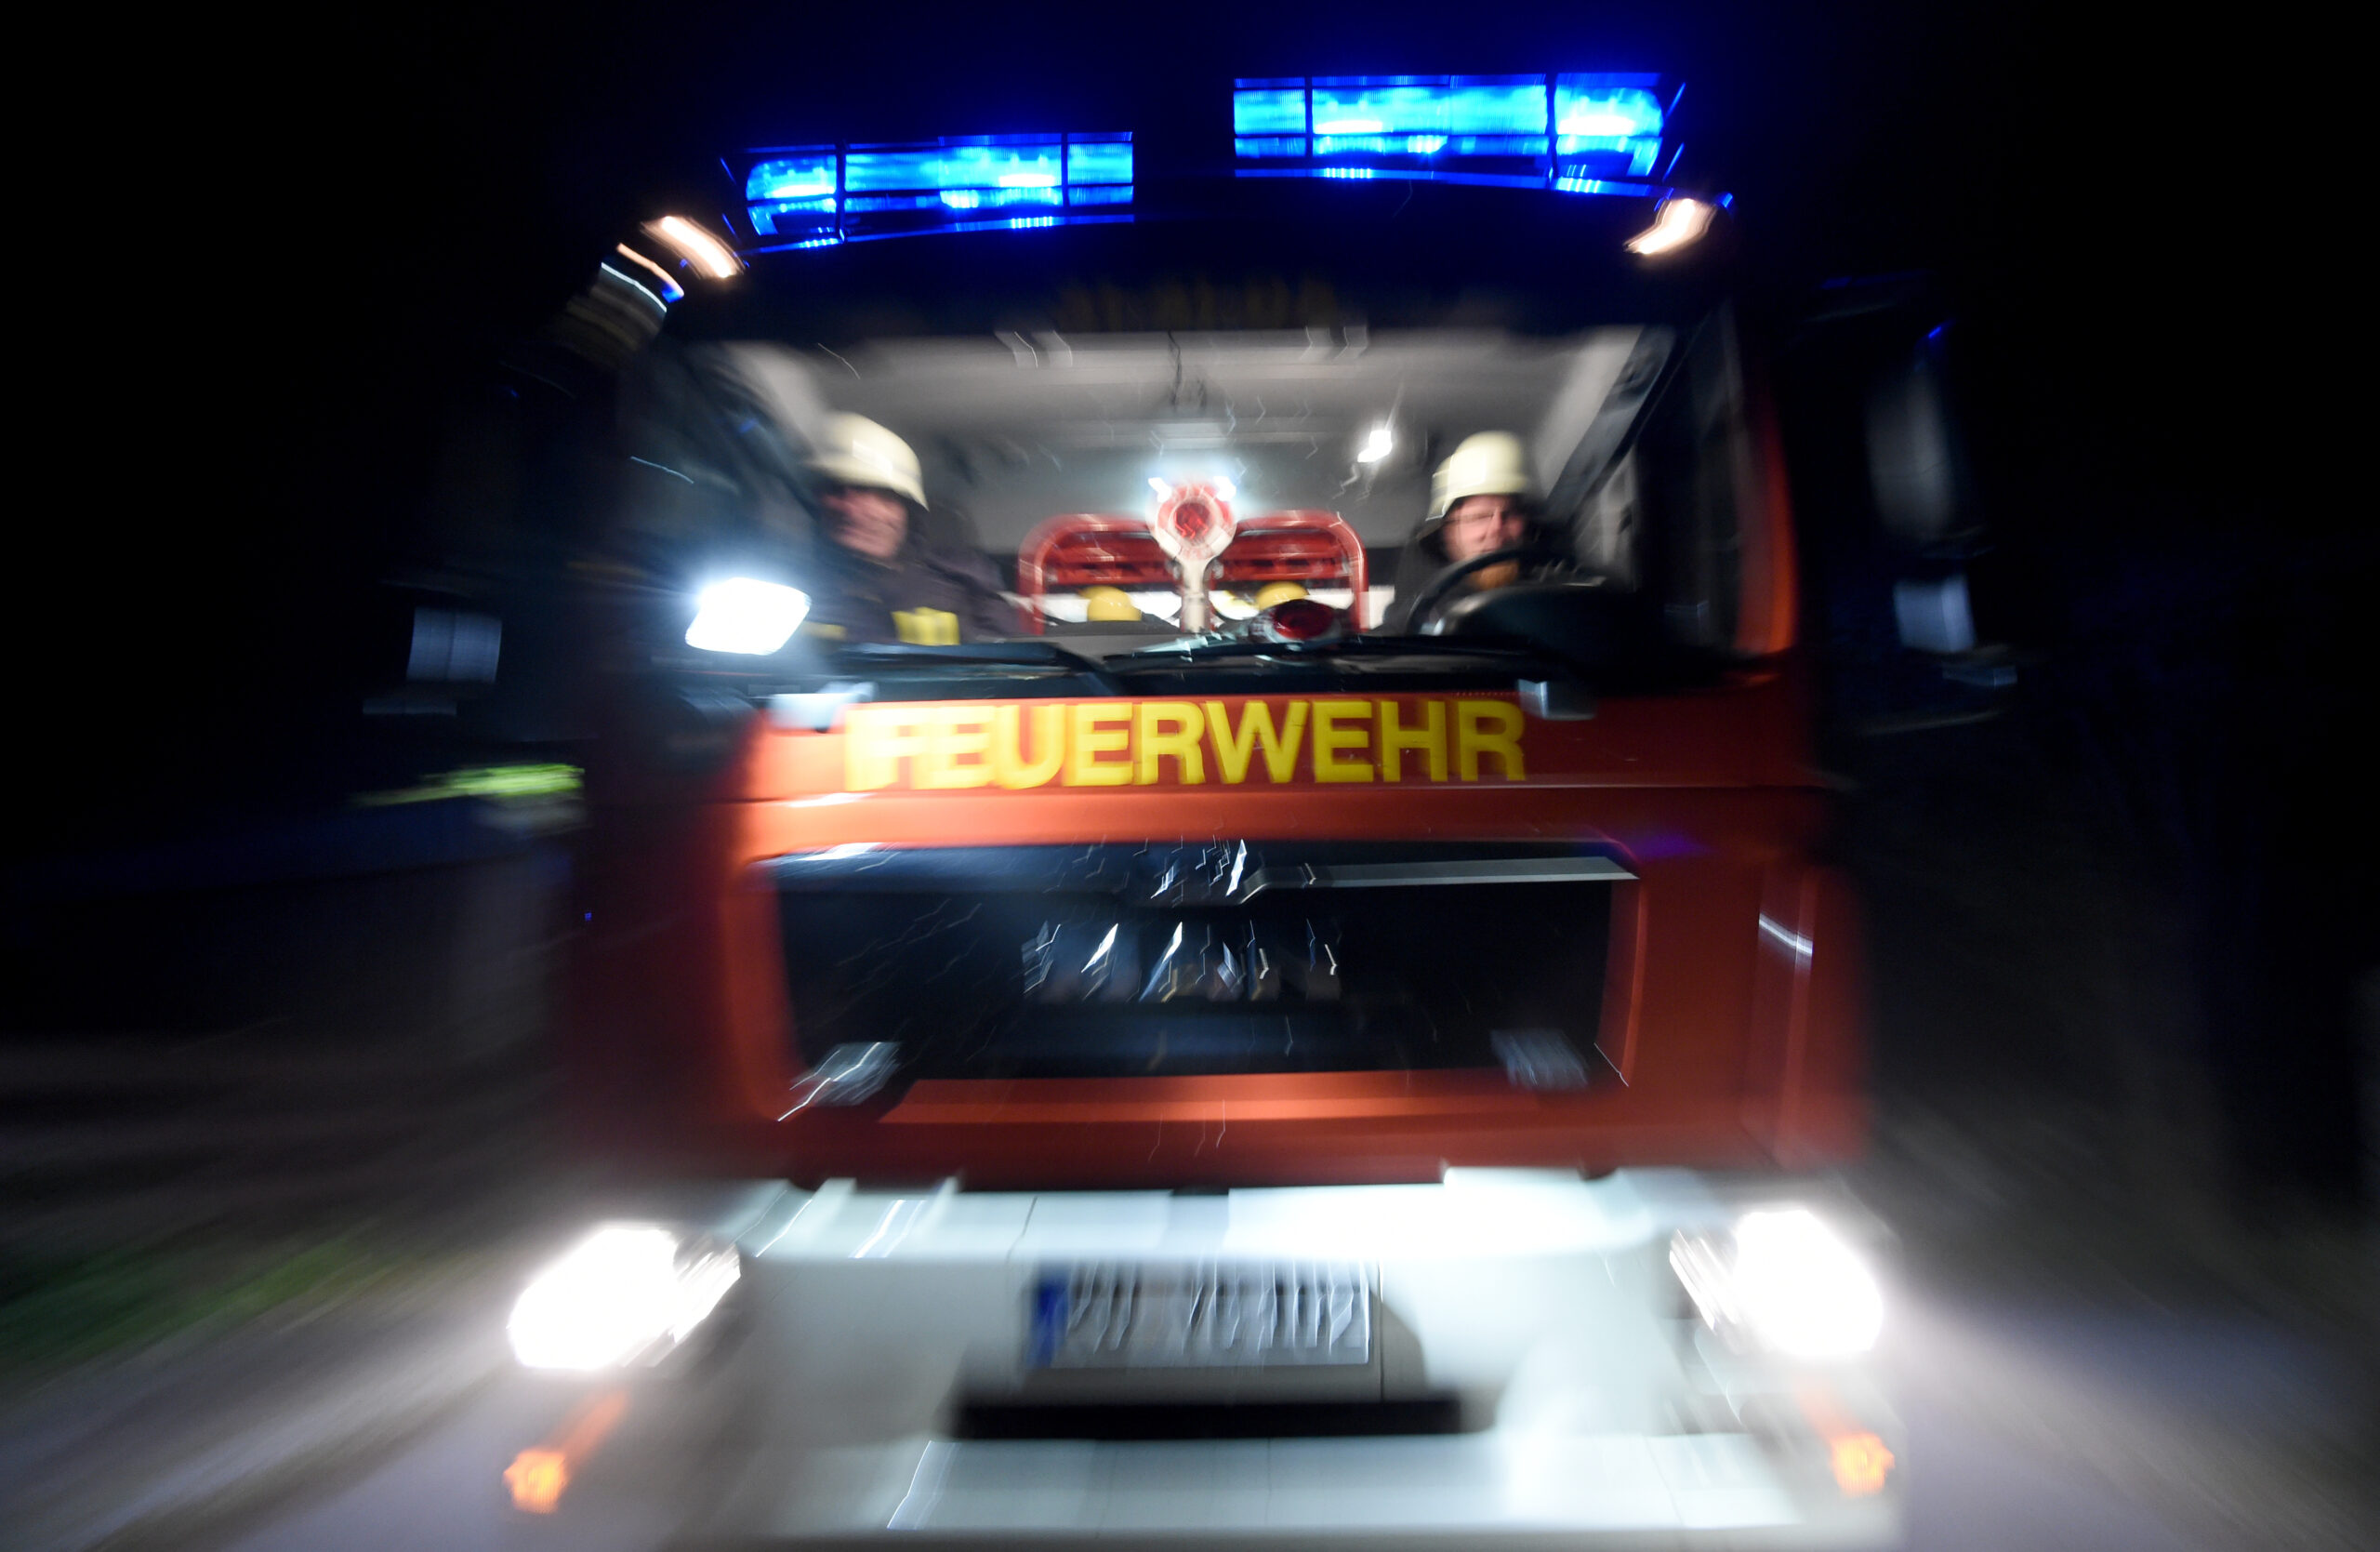 Wohnungsbrand auf Sylt – FRau stirbt in den Flammen